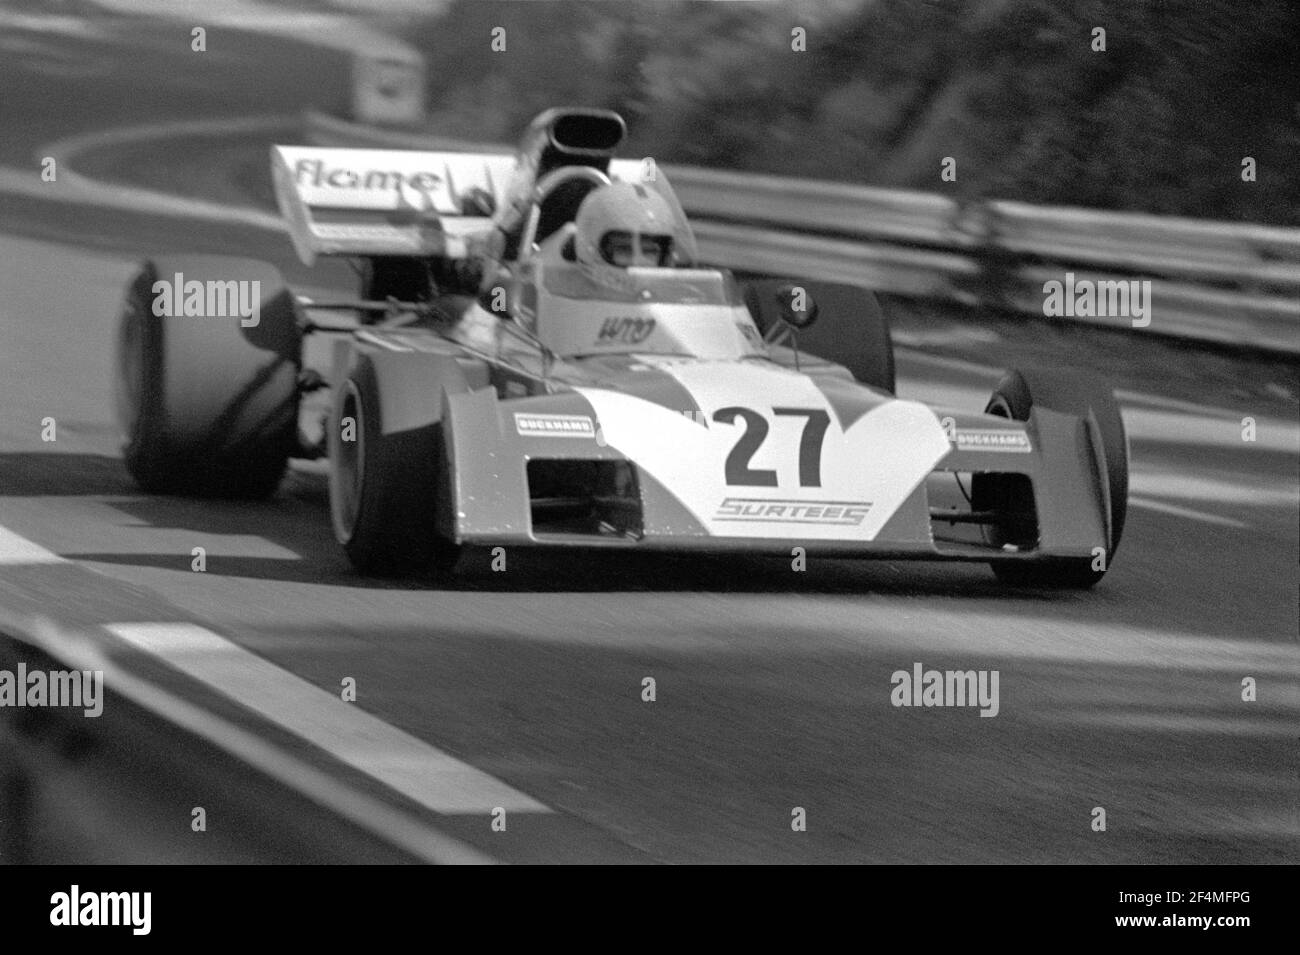 Tim SCHENKEN fährt Surtees-Ford F1 Auto in voller Geschwindigkeit während 1972 Grand Prix de France, in Charade Circuit bei Clermont-Ferrand. Stockfoto